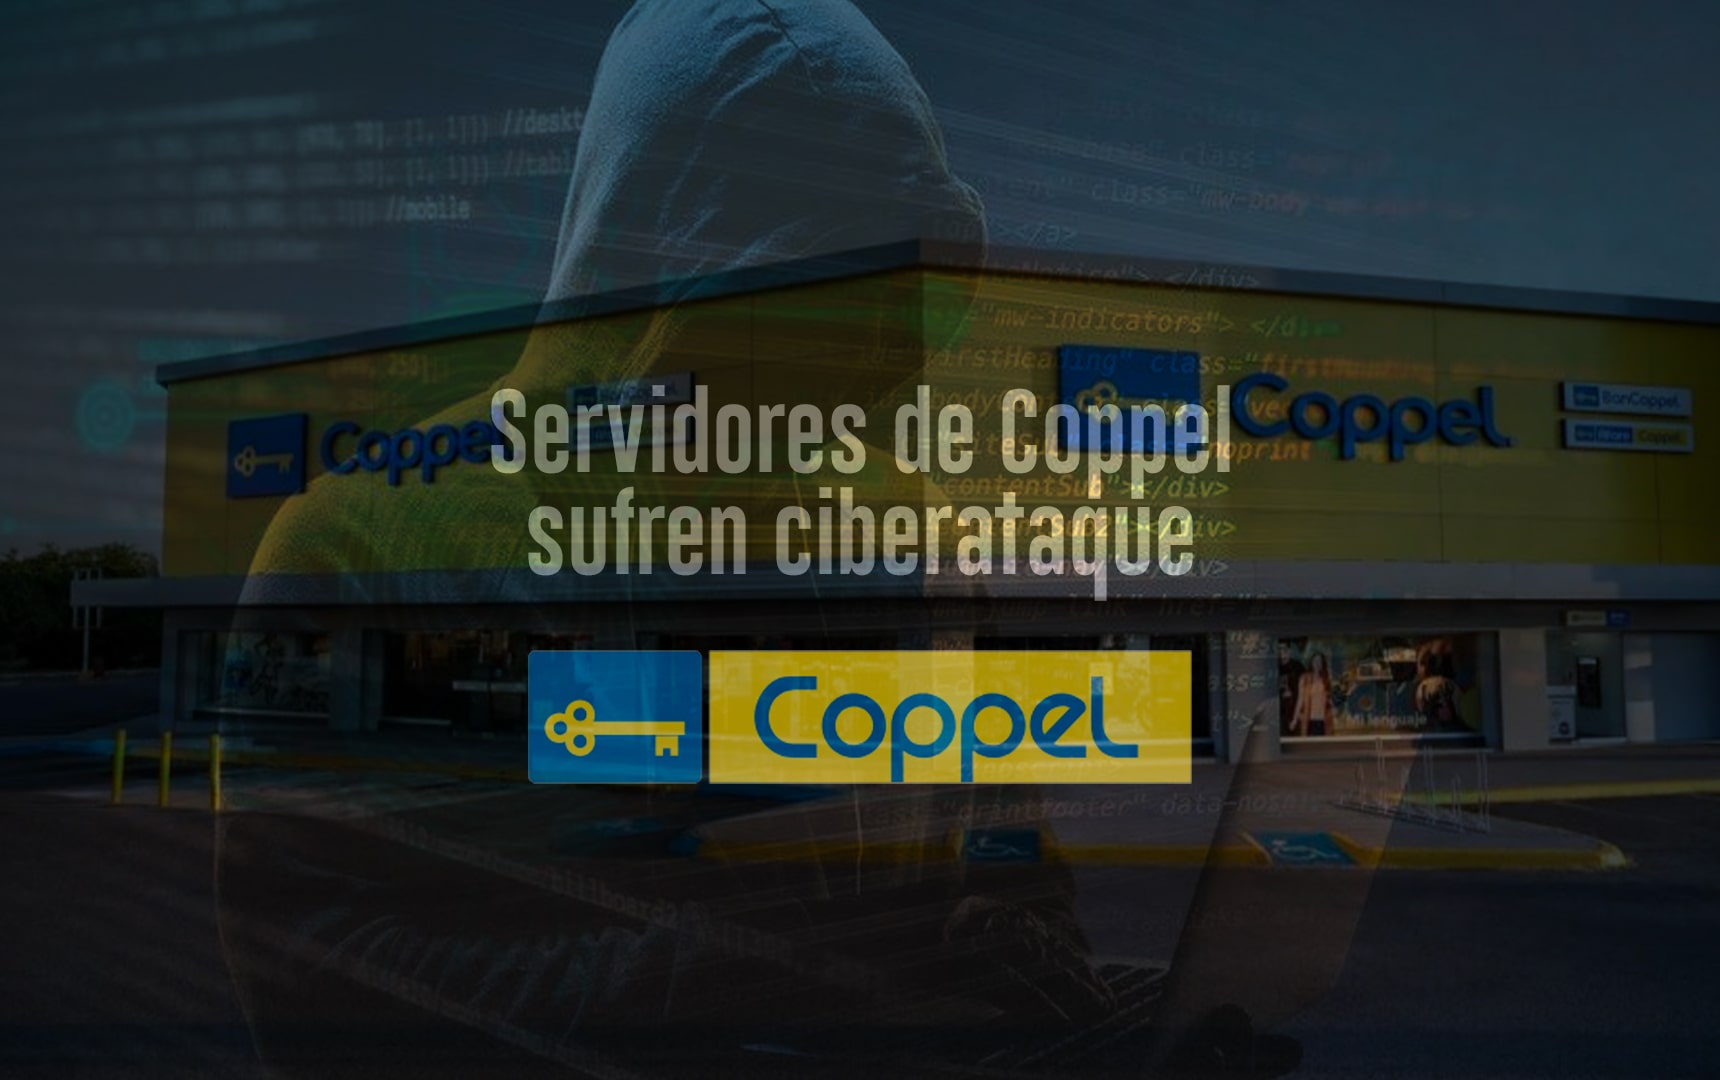 Servidores de Coppel sufren ciberataque